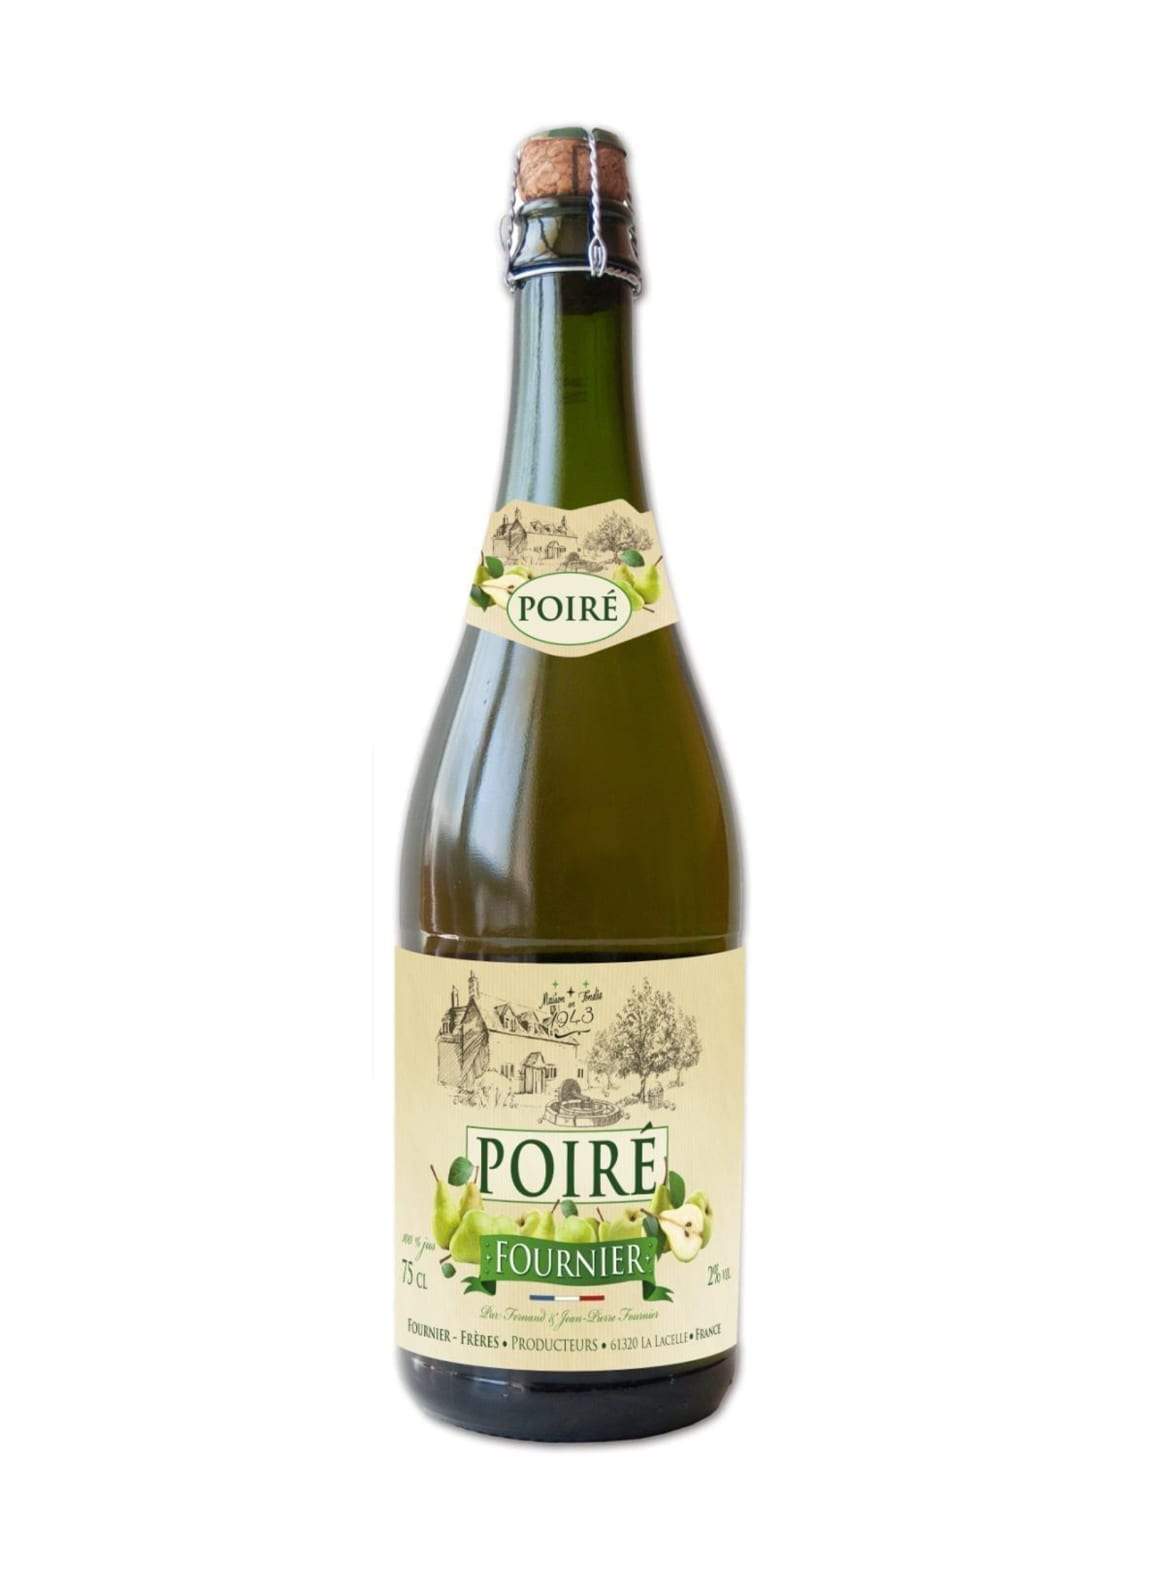 Fournier Poire (Pear Cider) 2% 750ml | Hard Cider | Shop online at Spirits of France